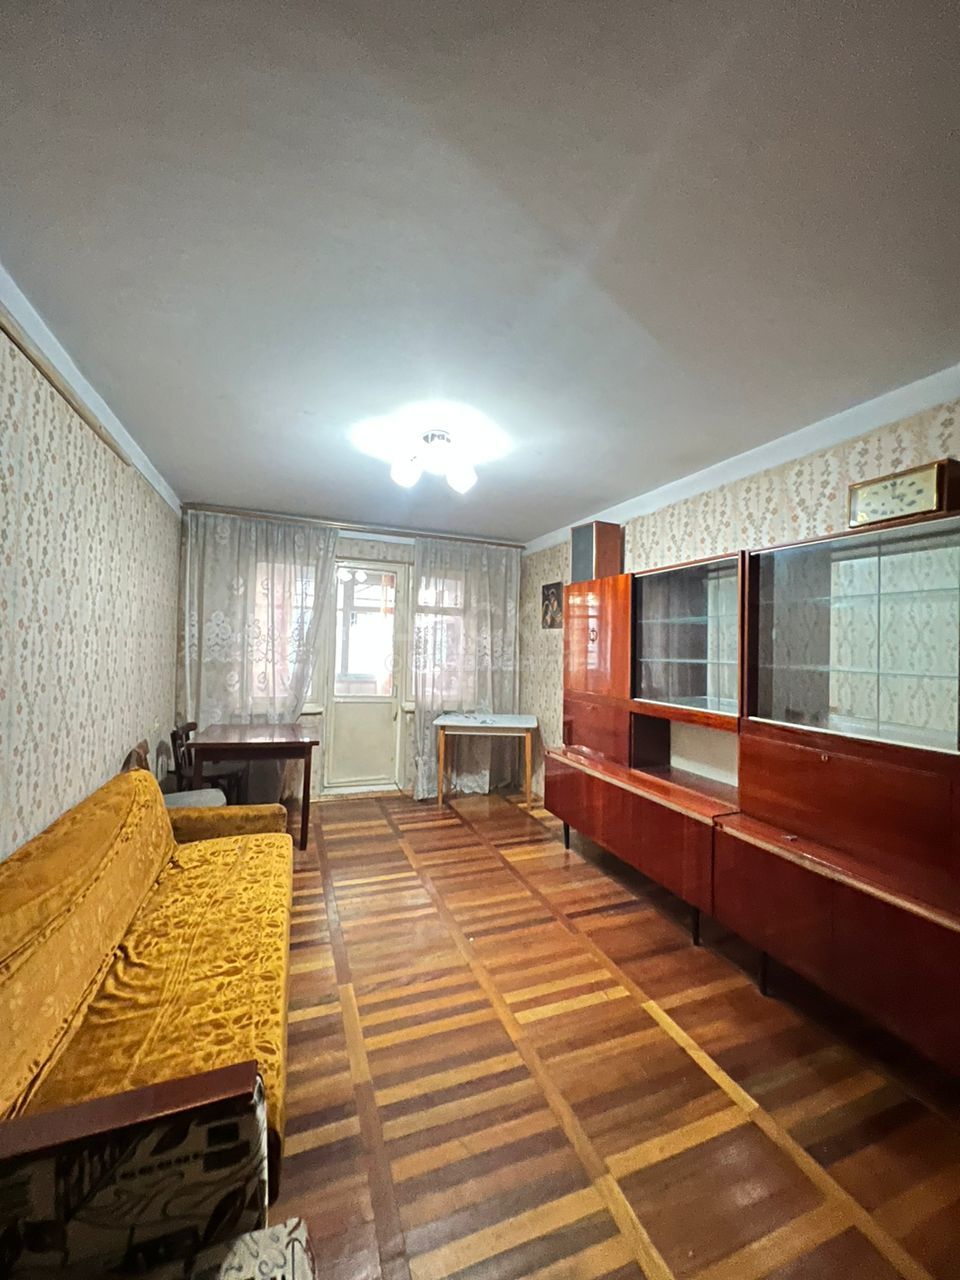 Продаю 2-комнатную квартиру, 43кв. м., этаж - 1/4, в 5 микрорайоне по Миррахимова со старым ремонтом - 56.500$.